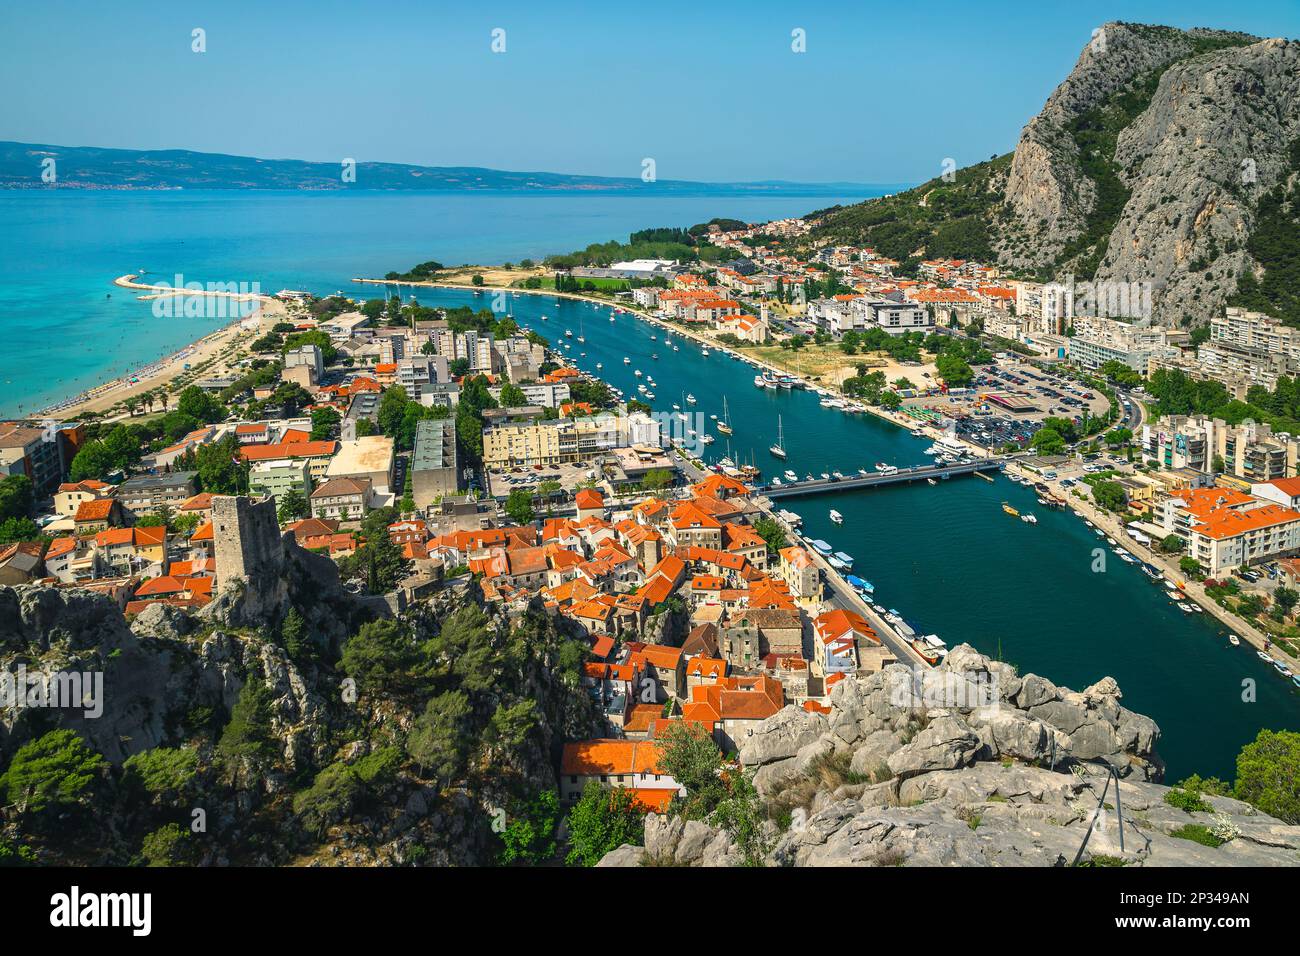 Vue imprenable sur la mer Adriatique et la majestueuse rivière Cetina depuis la célèbre via ferrata escalade route, omis, Dalmatie, Croatie, Europe Banque D'Images